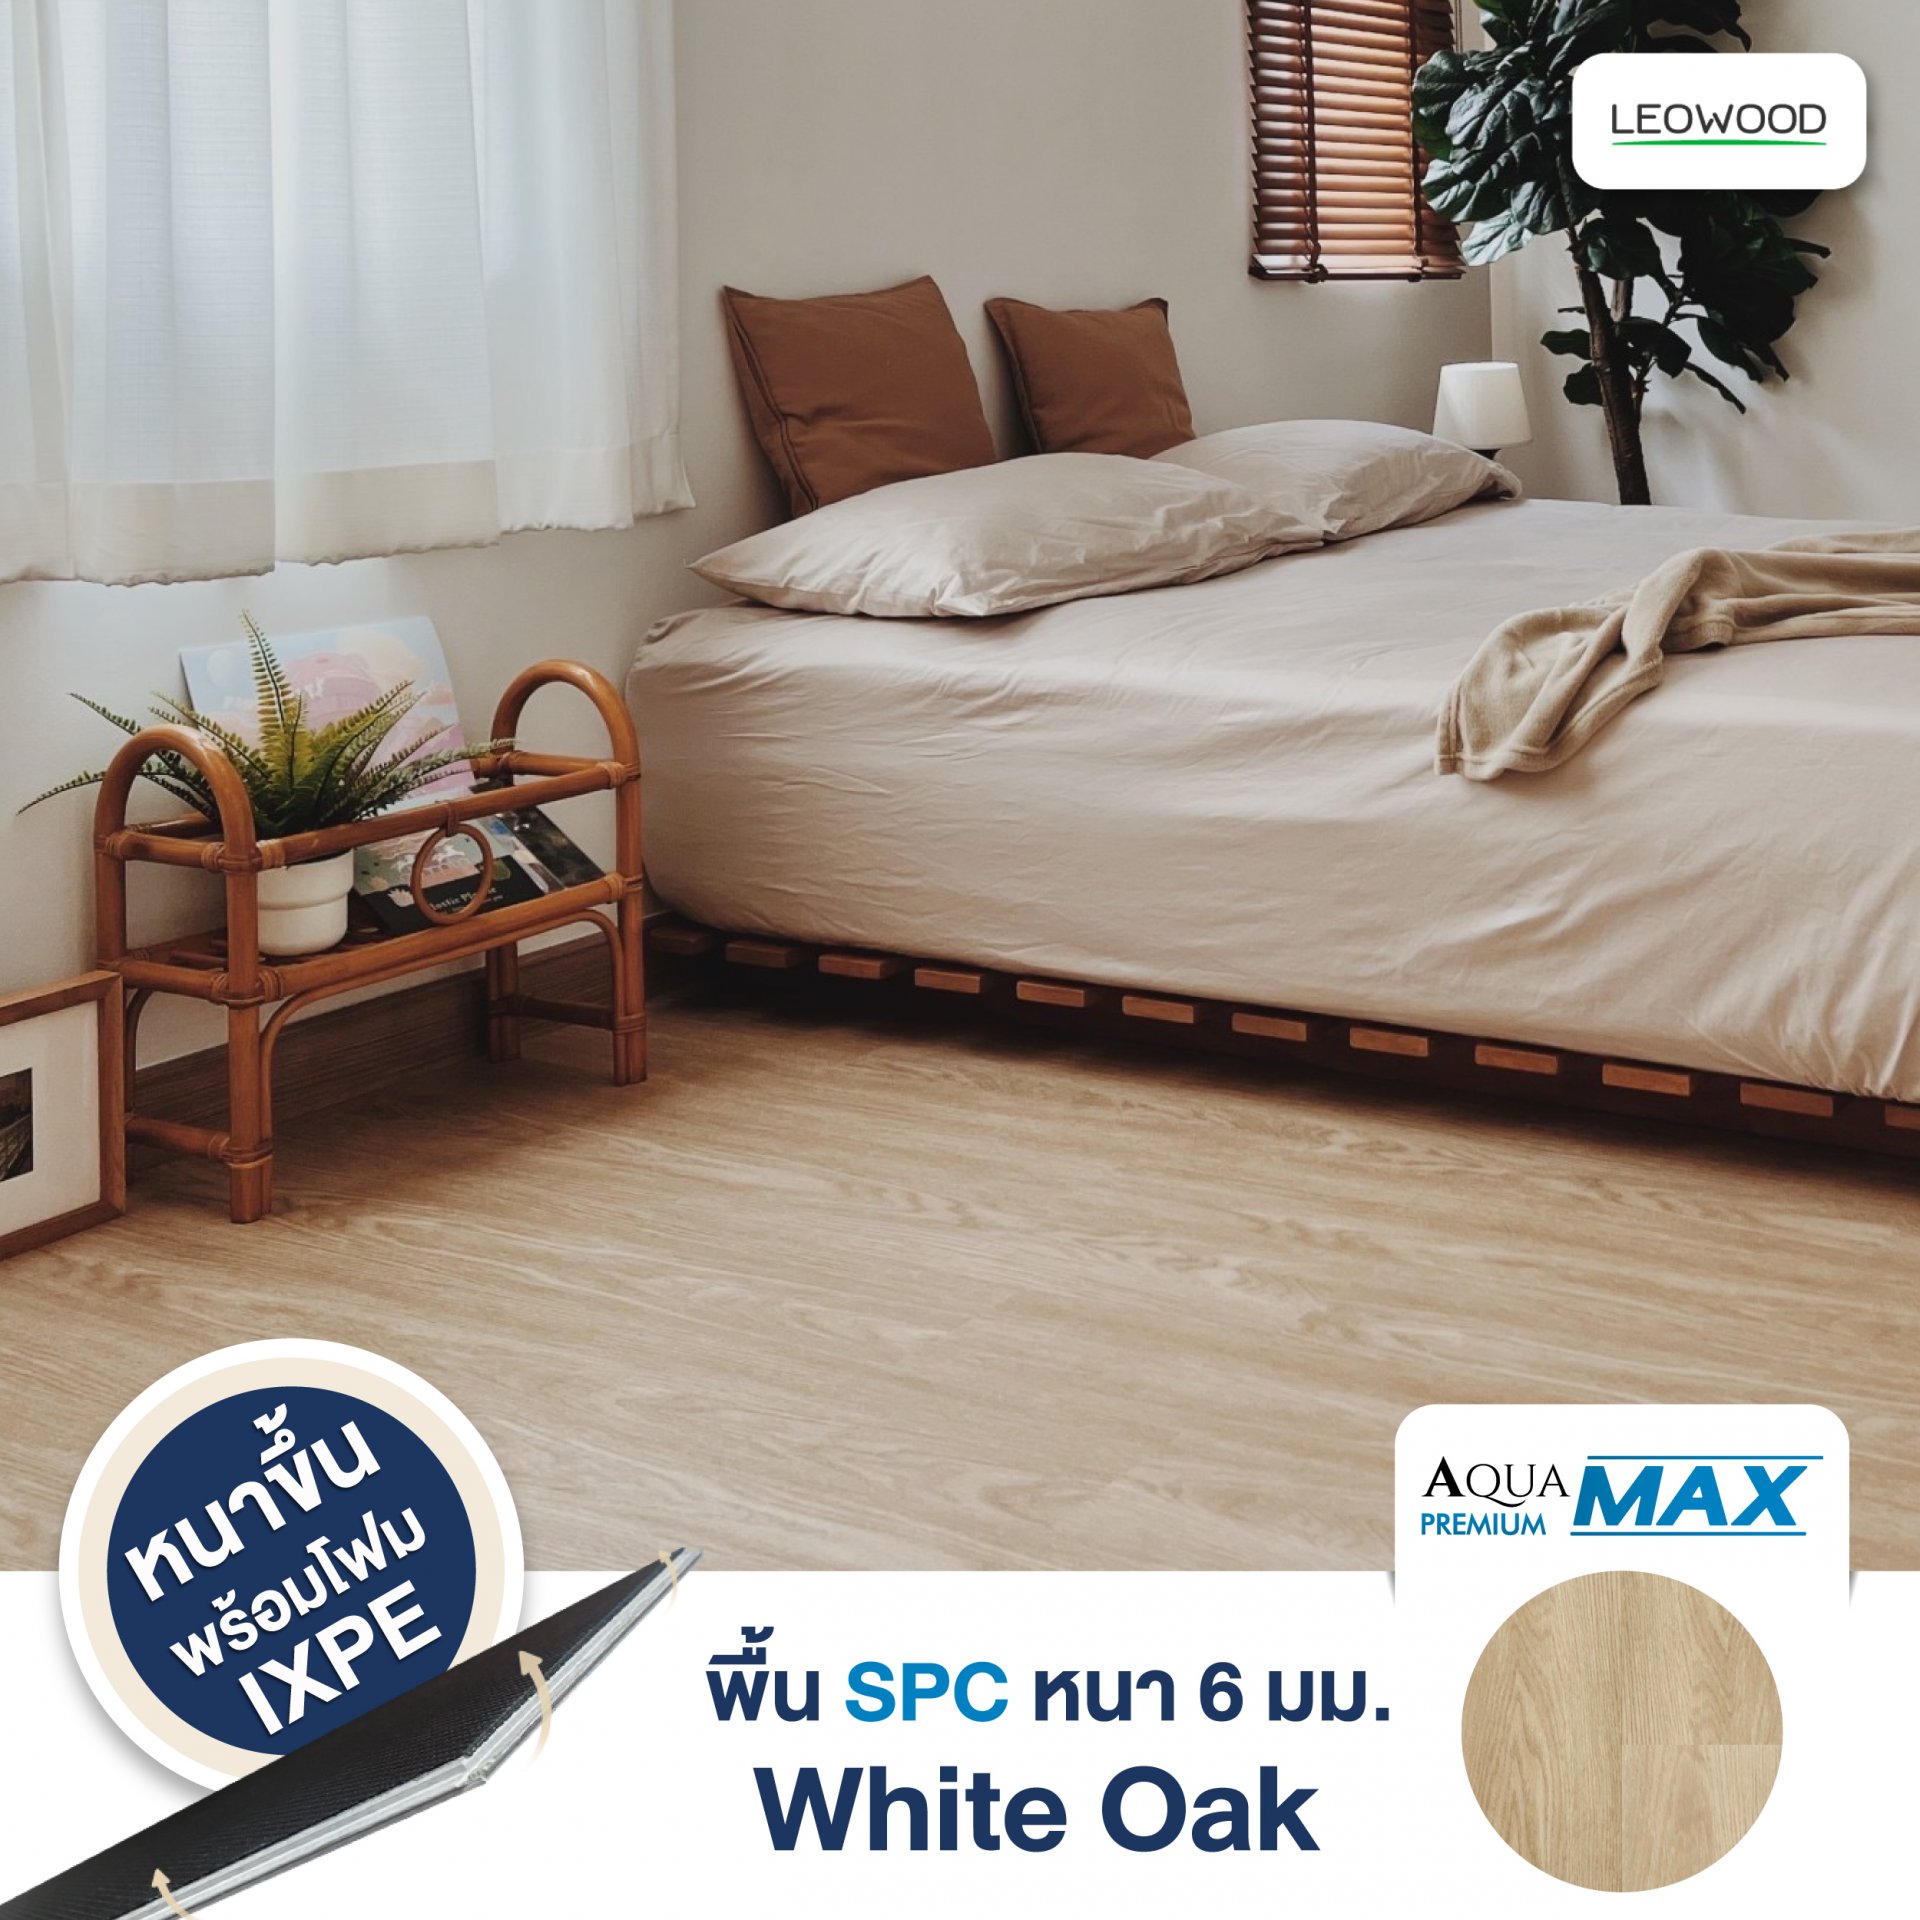 พื้นไม้ SPC รุ่น Aqua Premium MAX หนา 6 มม. พร้อมโฟม IXPE สี White Oak